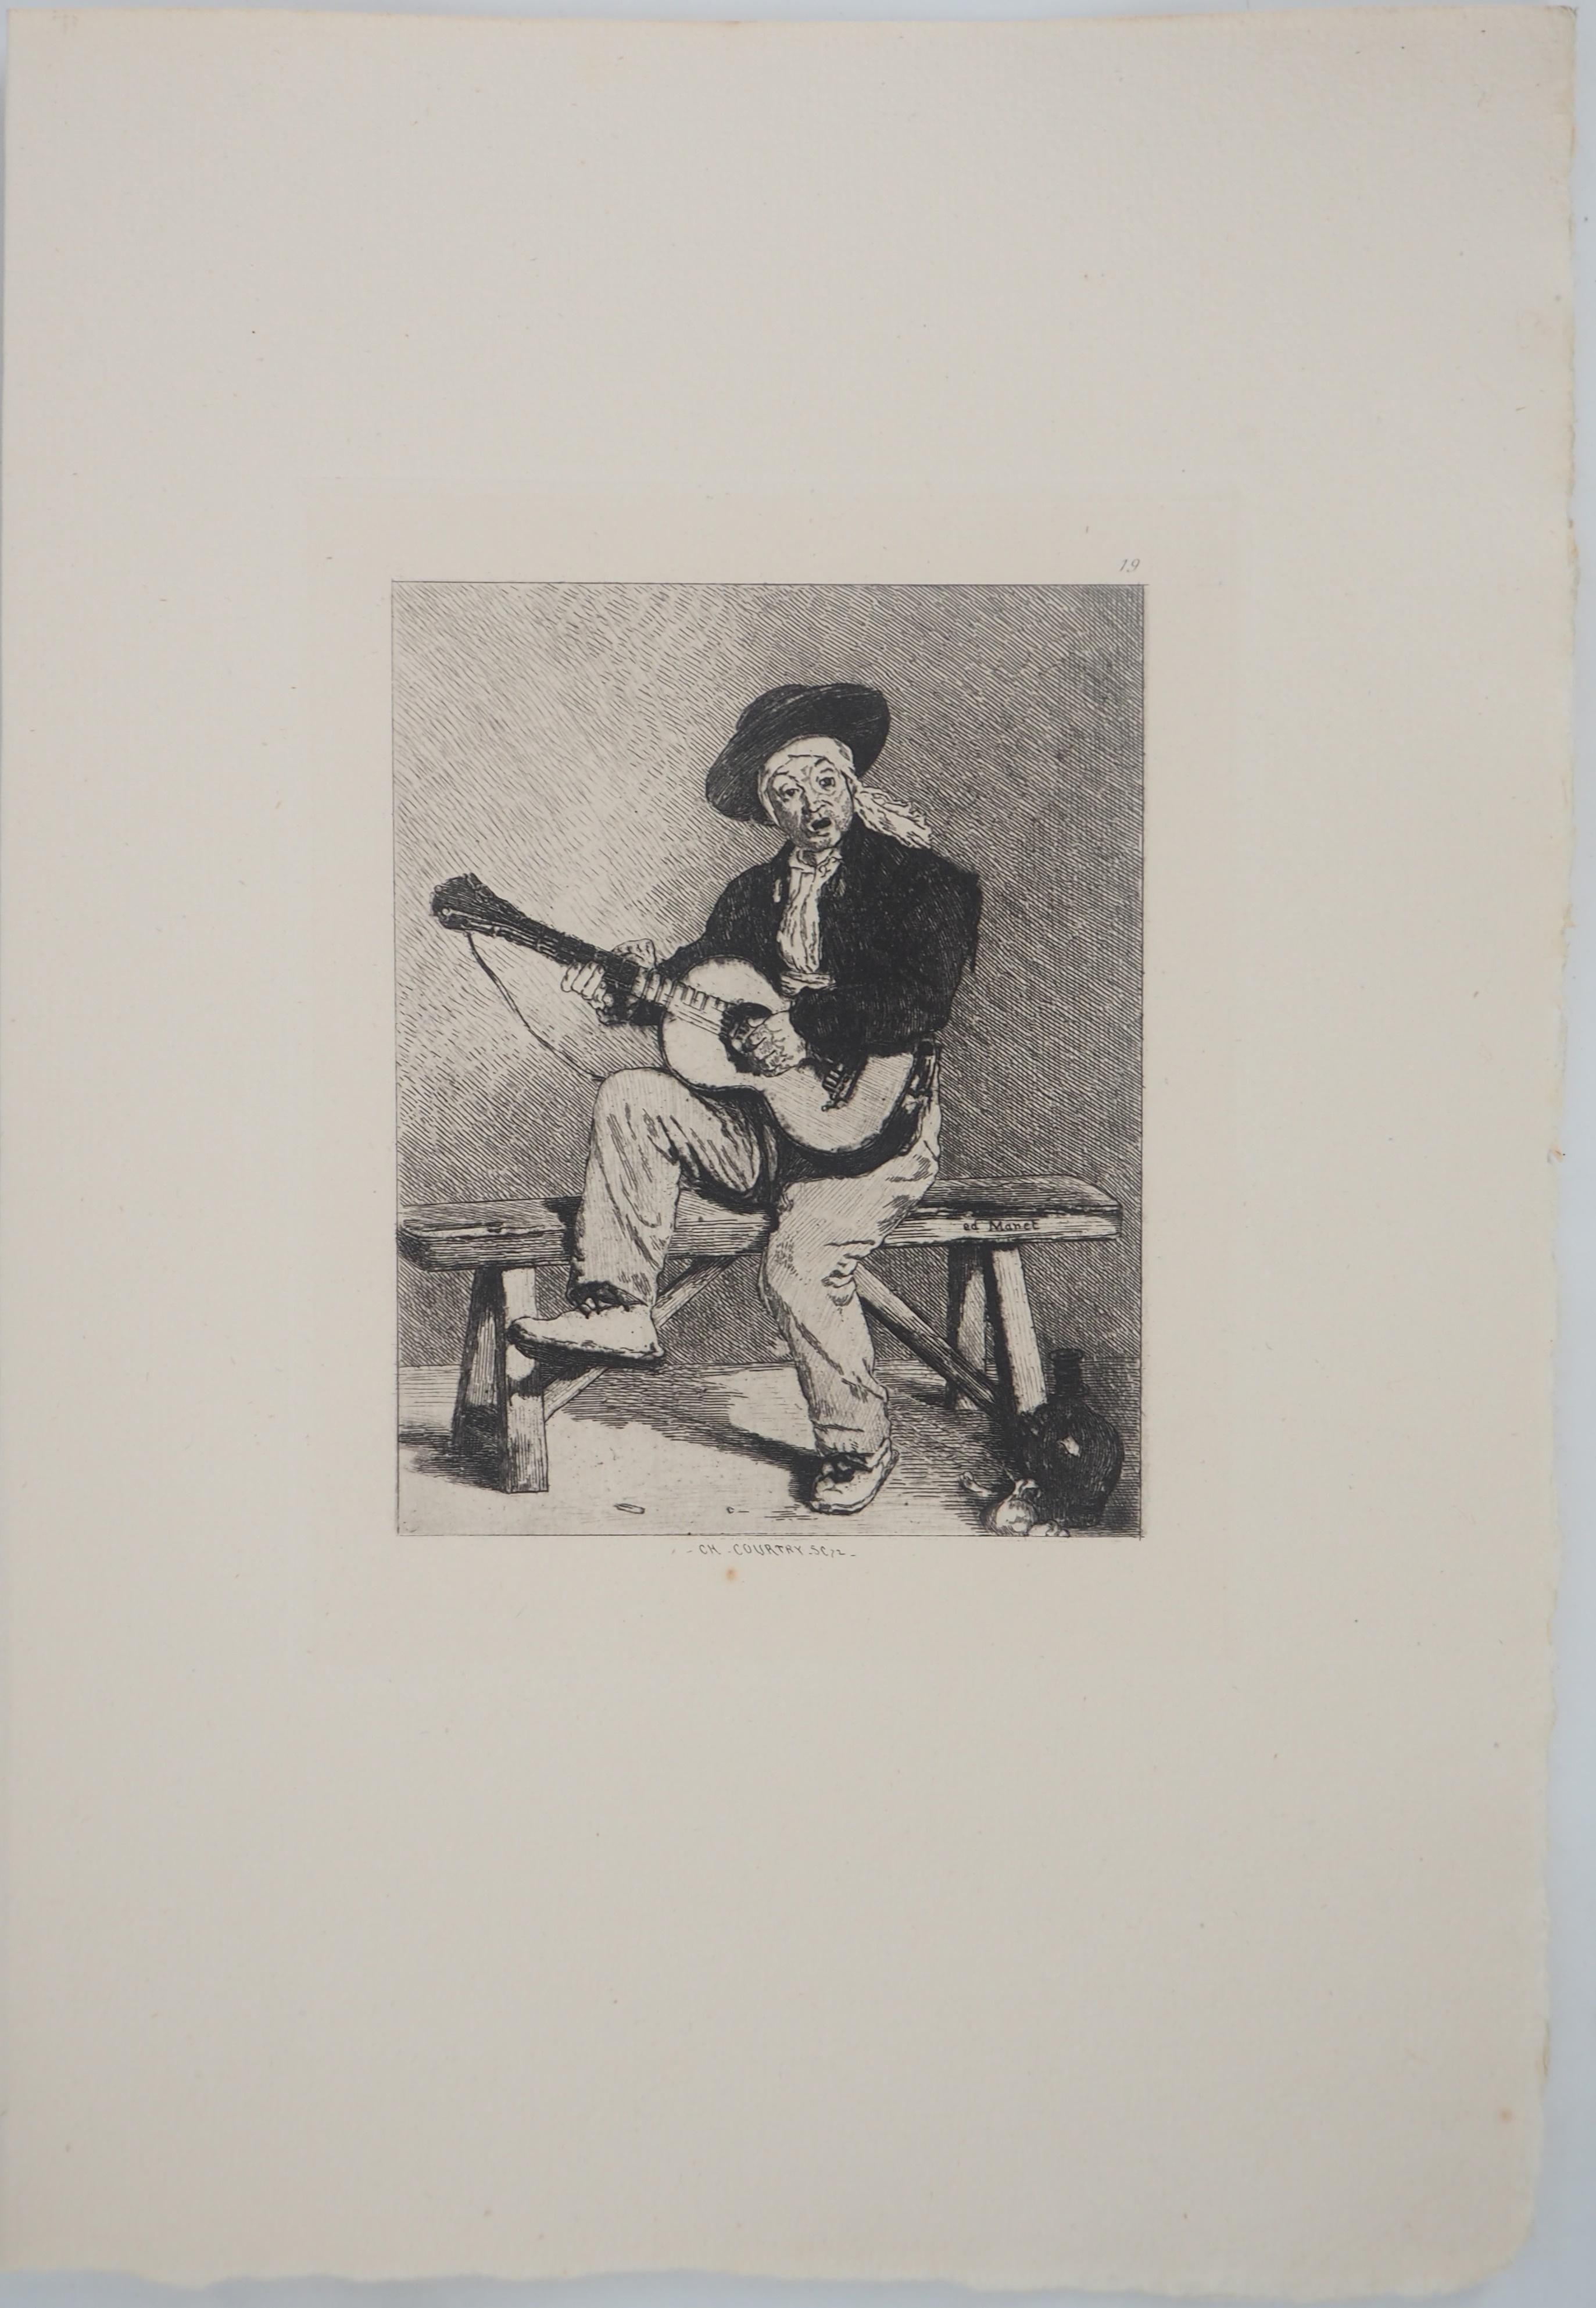 Spanischer Gitarrenspieler – Original-Radierung – Ed. Durand Ruel, 1873 – Print von Edouard Manet